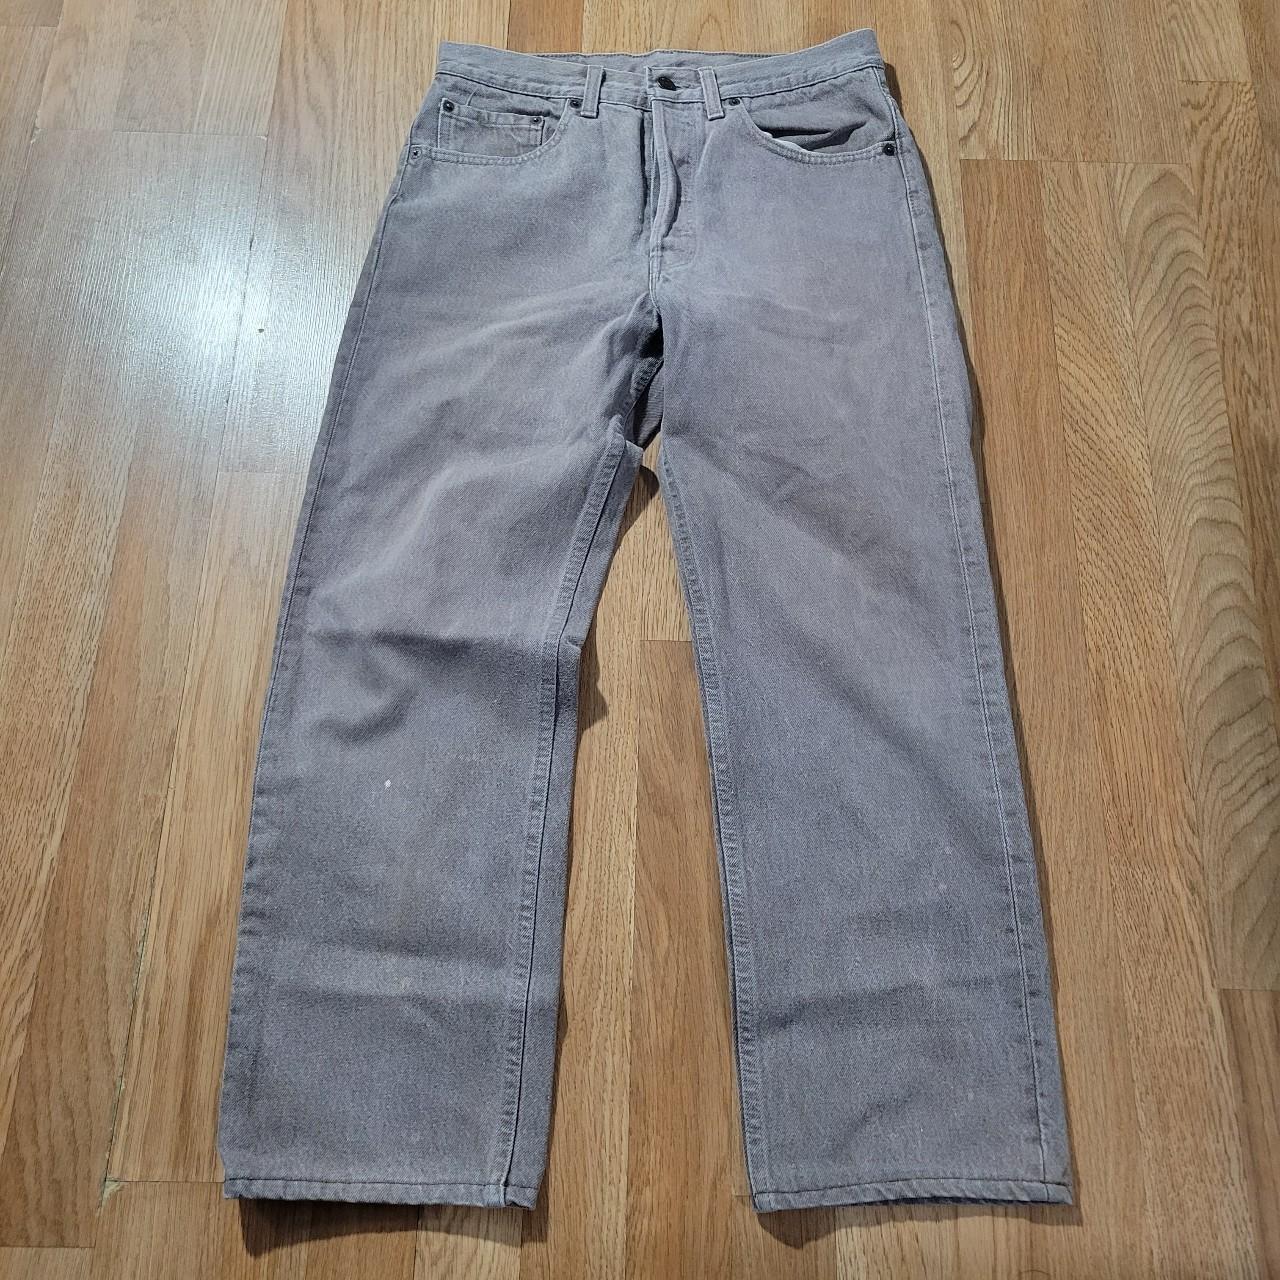 Vintage 80s Levis 501s Light brown jeans size 30x26... - Depop